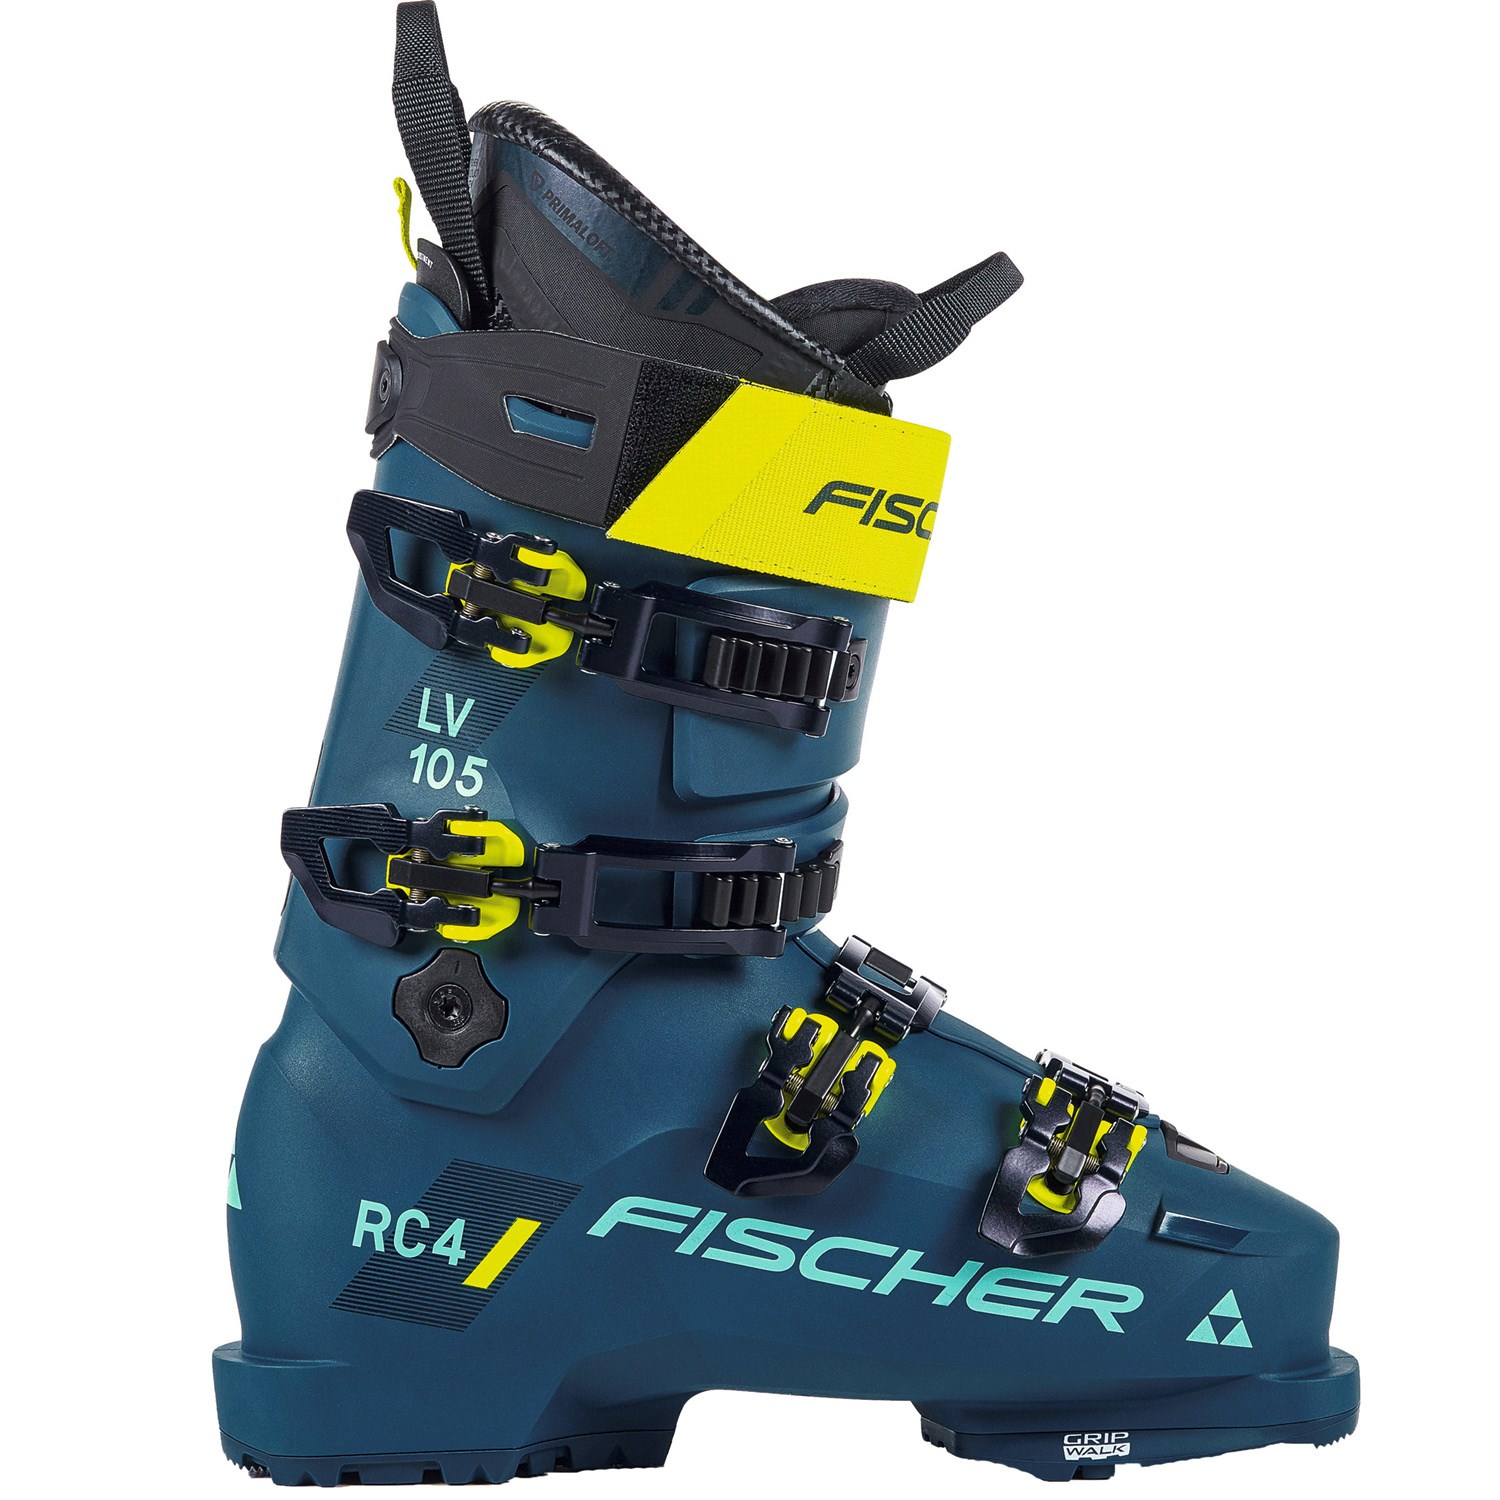 Лыжные ботинки Fischer RC4 105 LV горные лыжи fischer rc4 wc jr m o jr rc4 z9 21 22 130